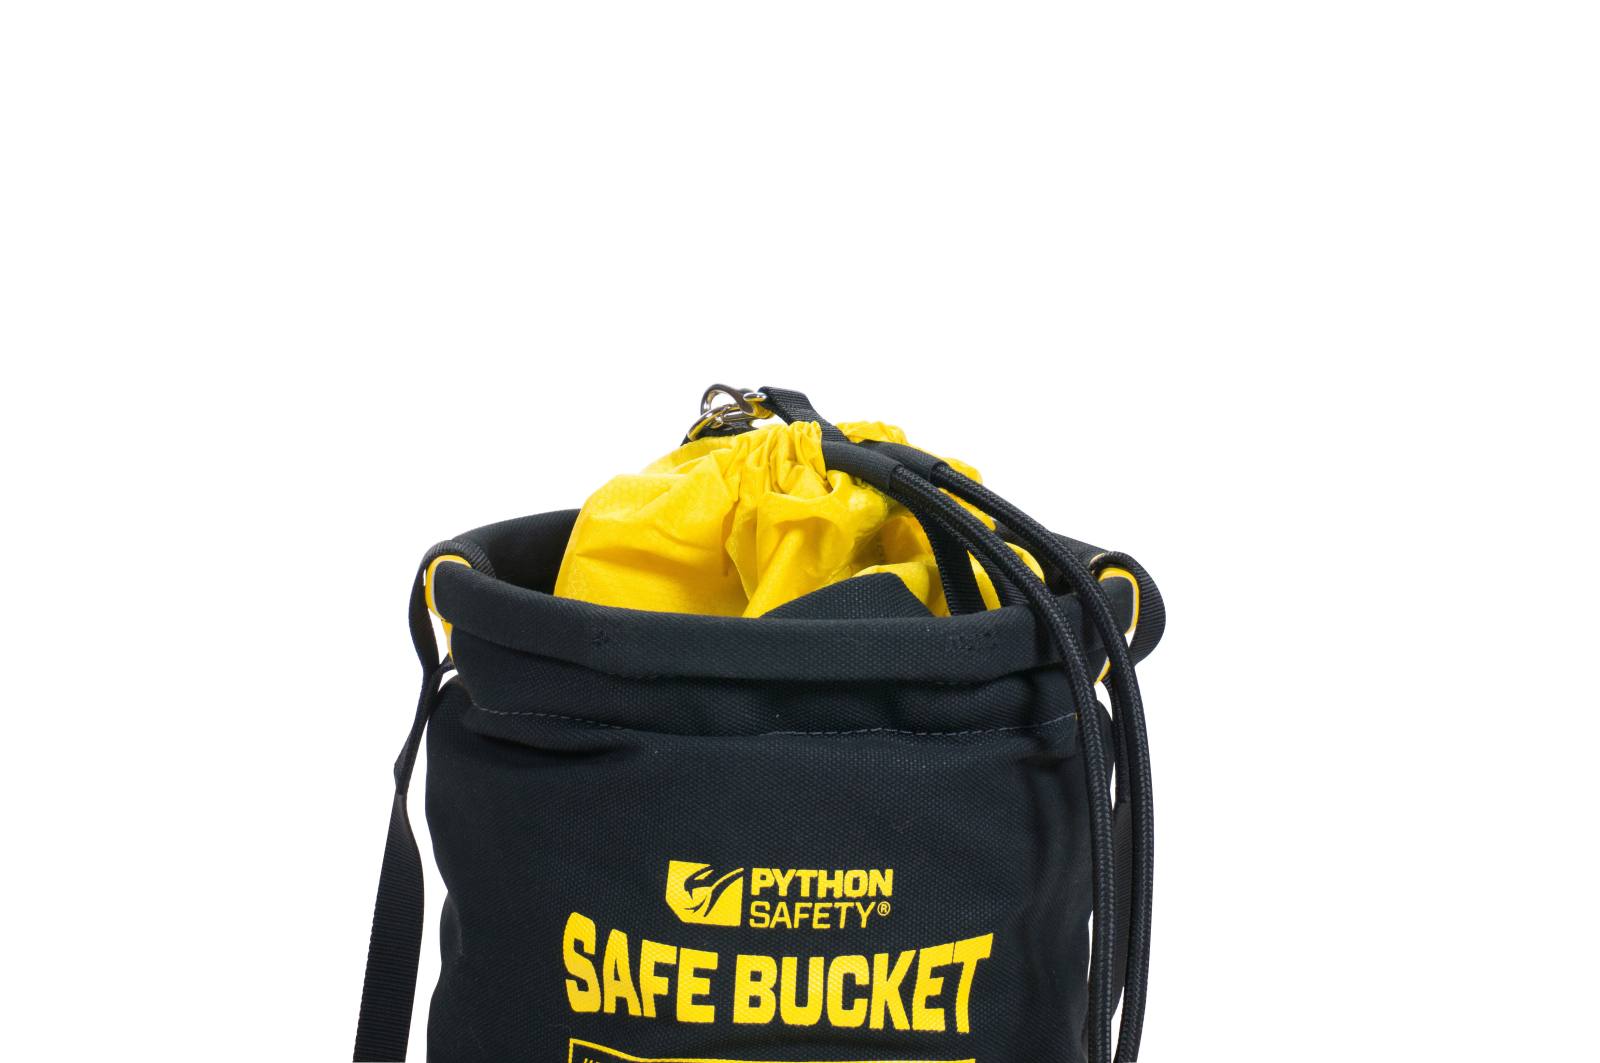 3M DBI-SALA insert indéformable pour sac de transport SAFETY BUCKET, avec poches de rangement pour les outils, positionnement facile grâce au velcro, amovible